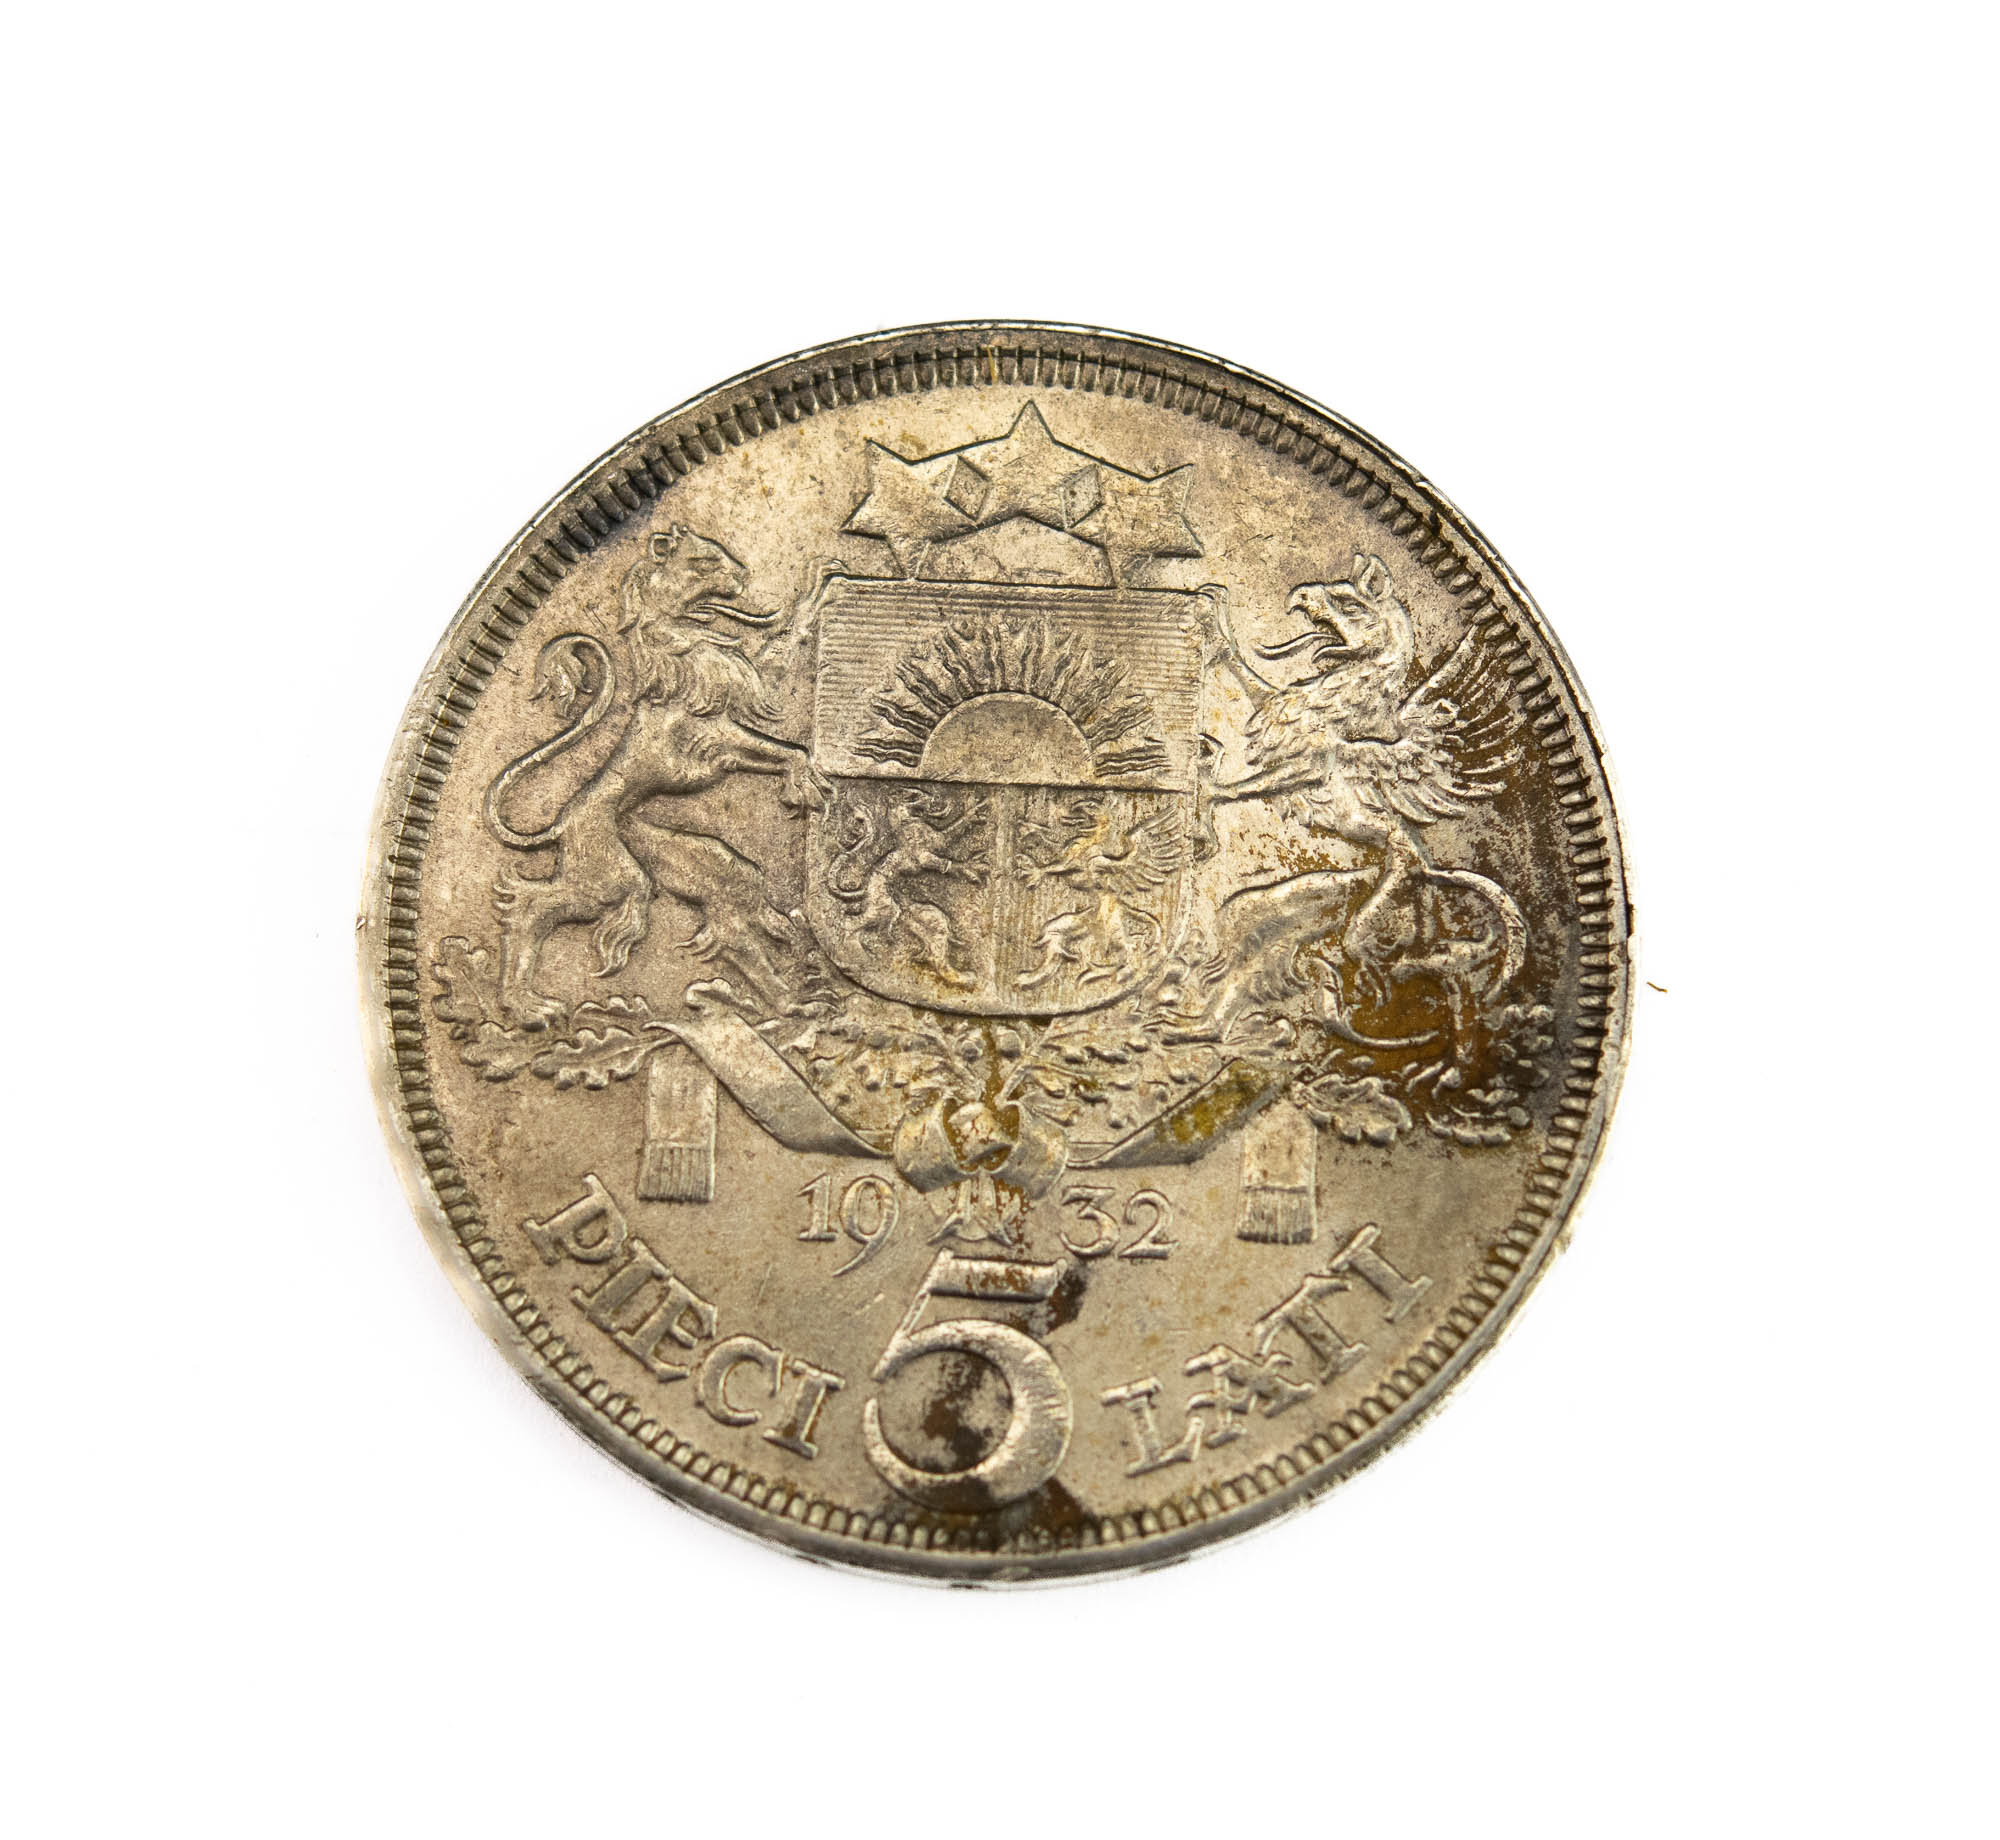 Läti münt 1932 - 5 latti